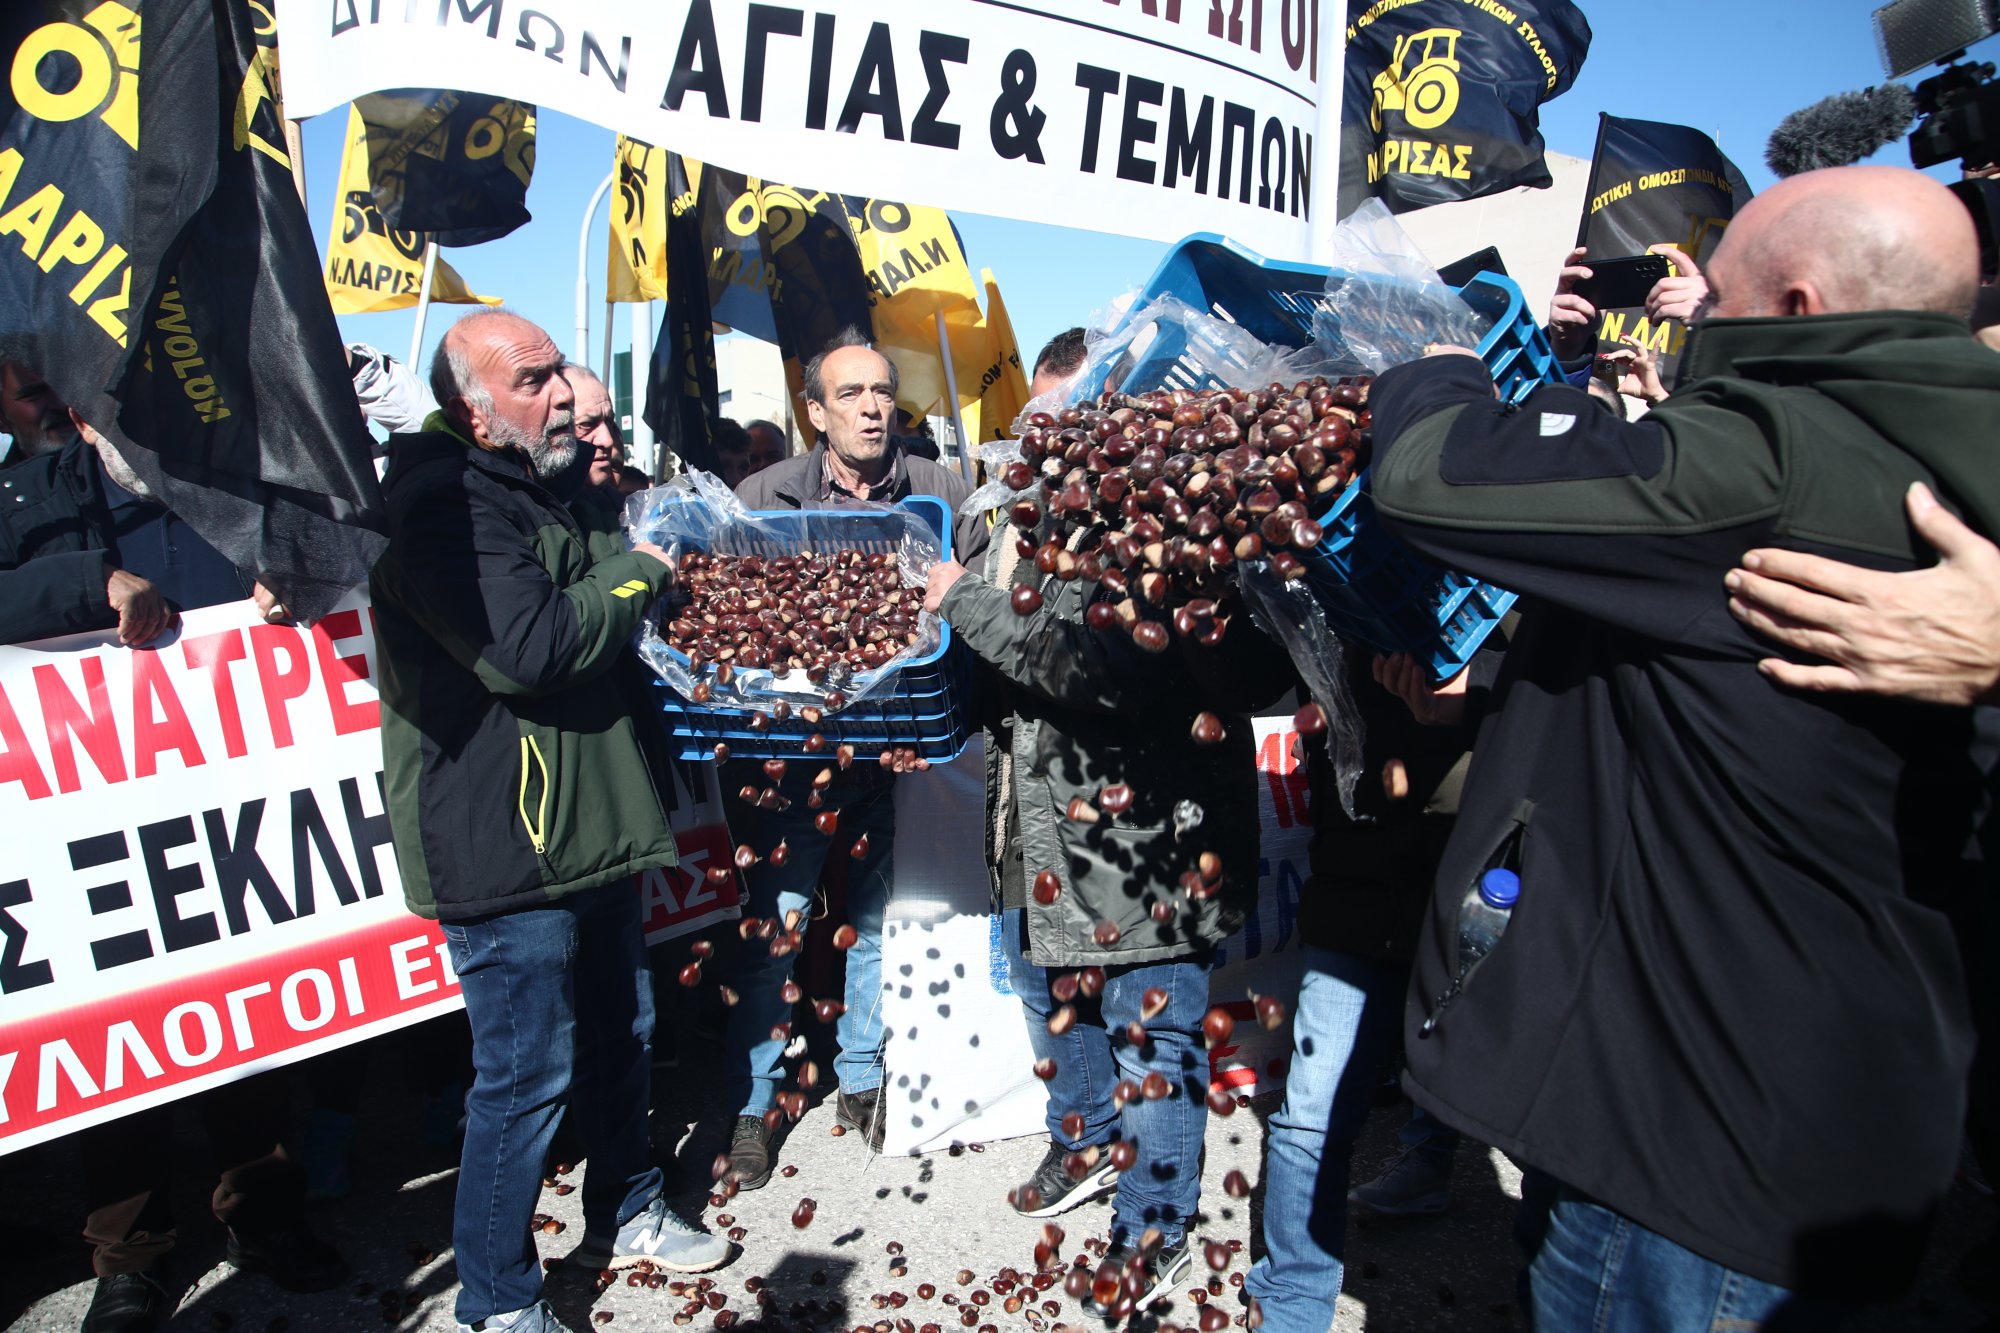 Υπό πολιορκία η Agrotica: Μαζικό το παναγροτικό συλλαλητήριο – Κάστανα και μήλα άδειασαν οι Θεσσαλοί